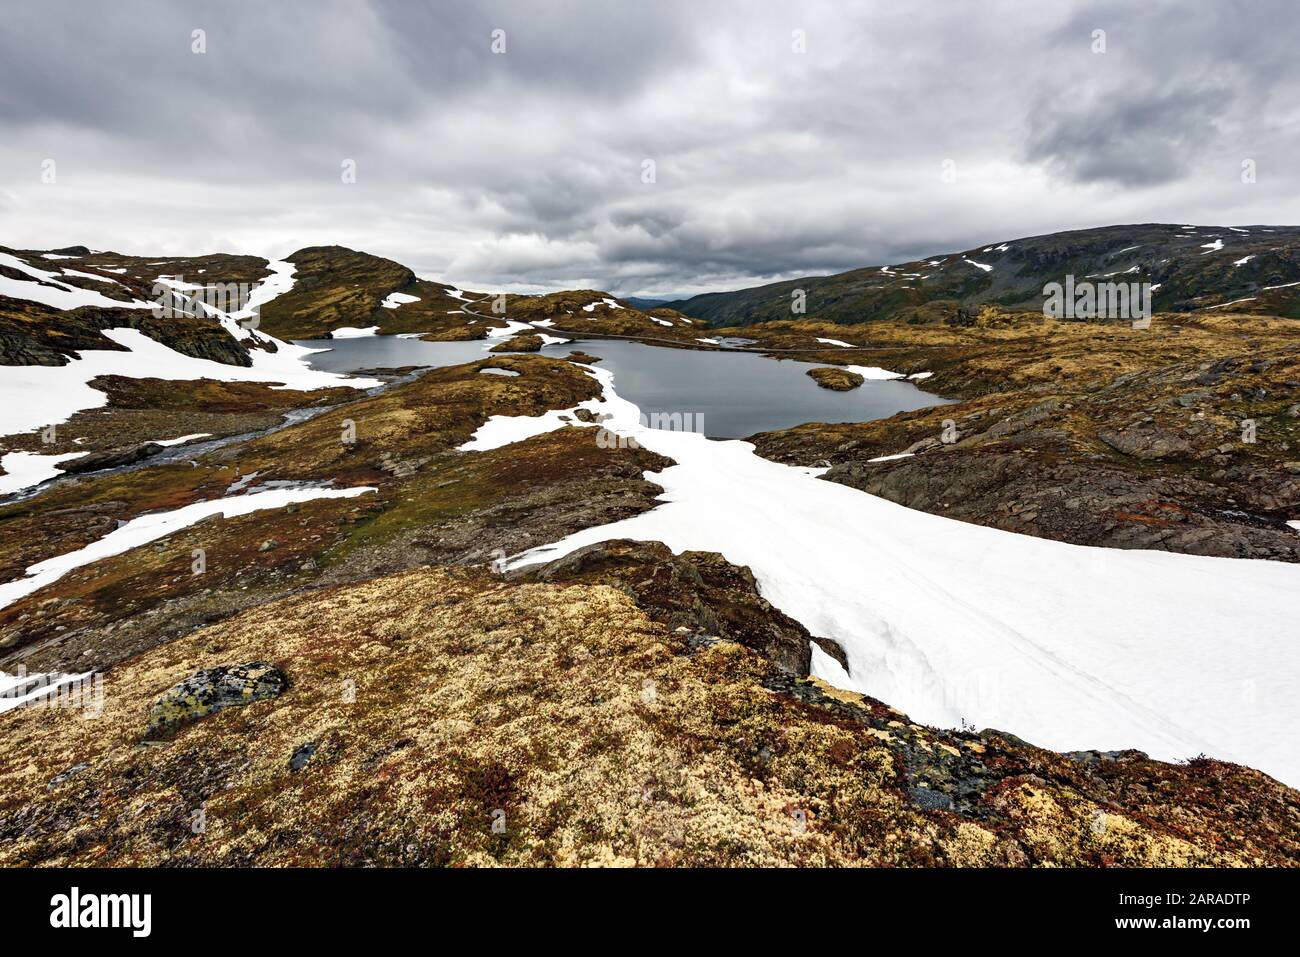 Paysage norvégien typique avec les montagnes enneigées et le lac clair près de la célèbre Aurlandsvegen (Bjorgavegen), mountain road, Aurland, Norvège. Banque D'Images